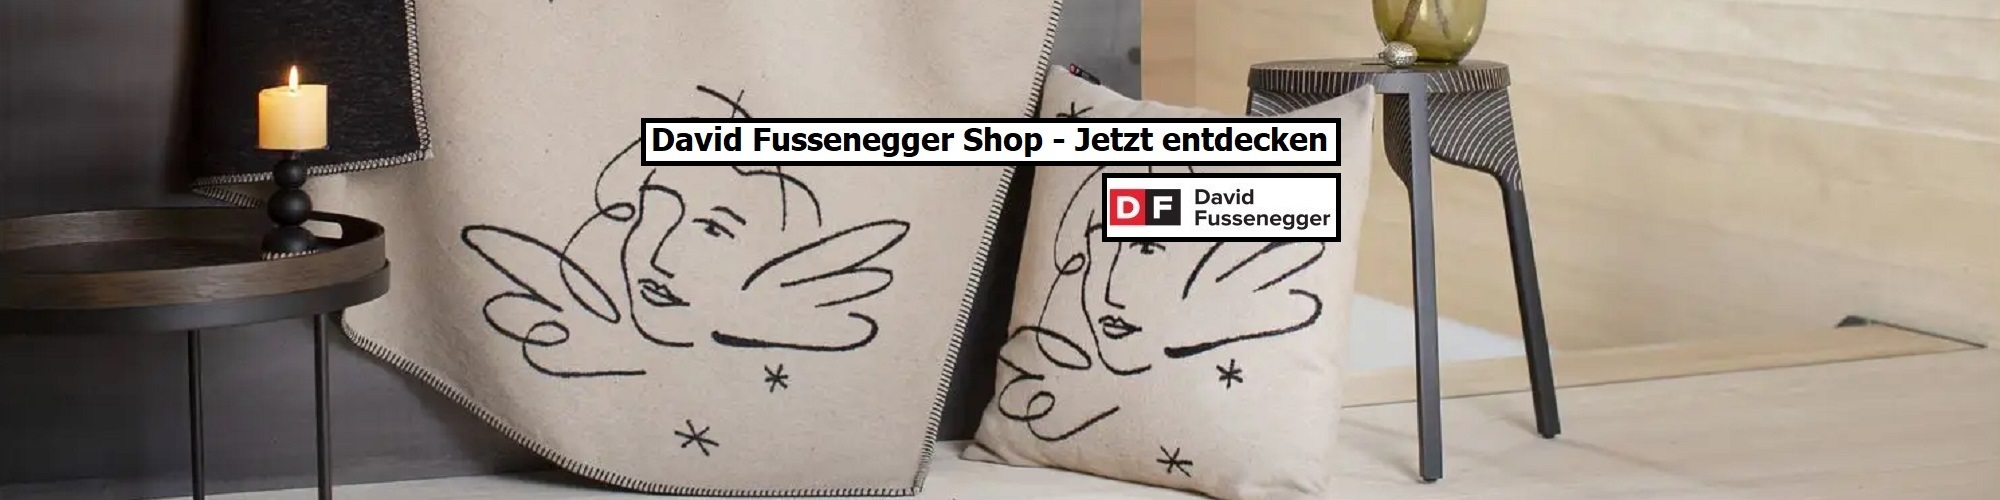 David Fussenegger Shop